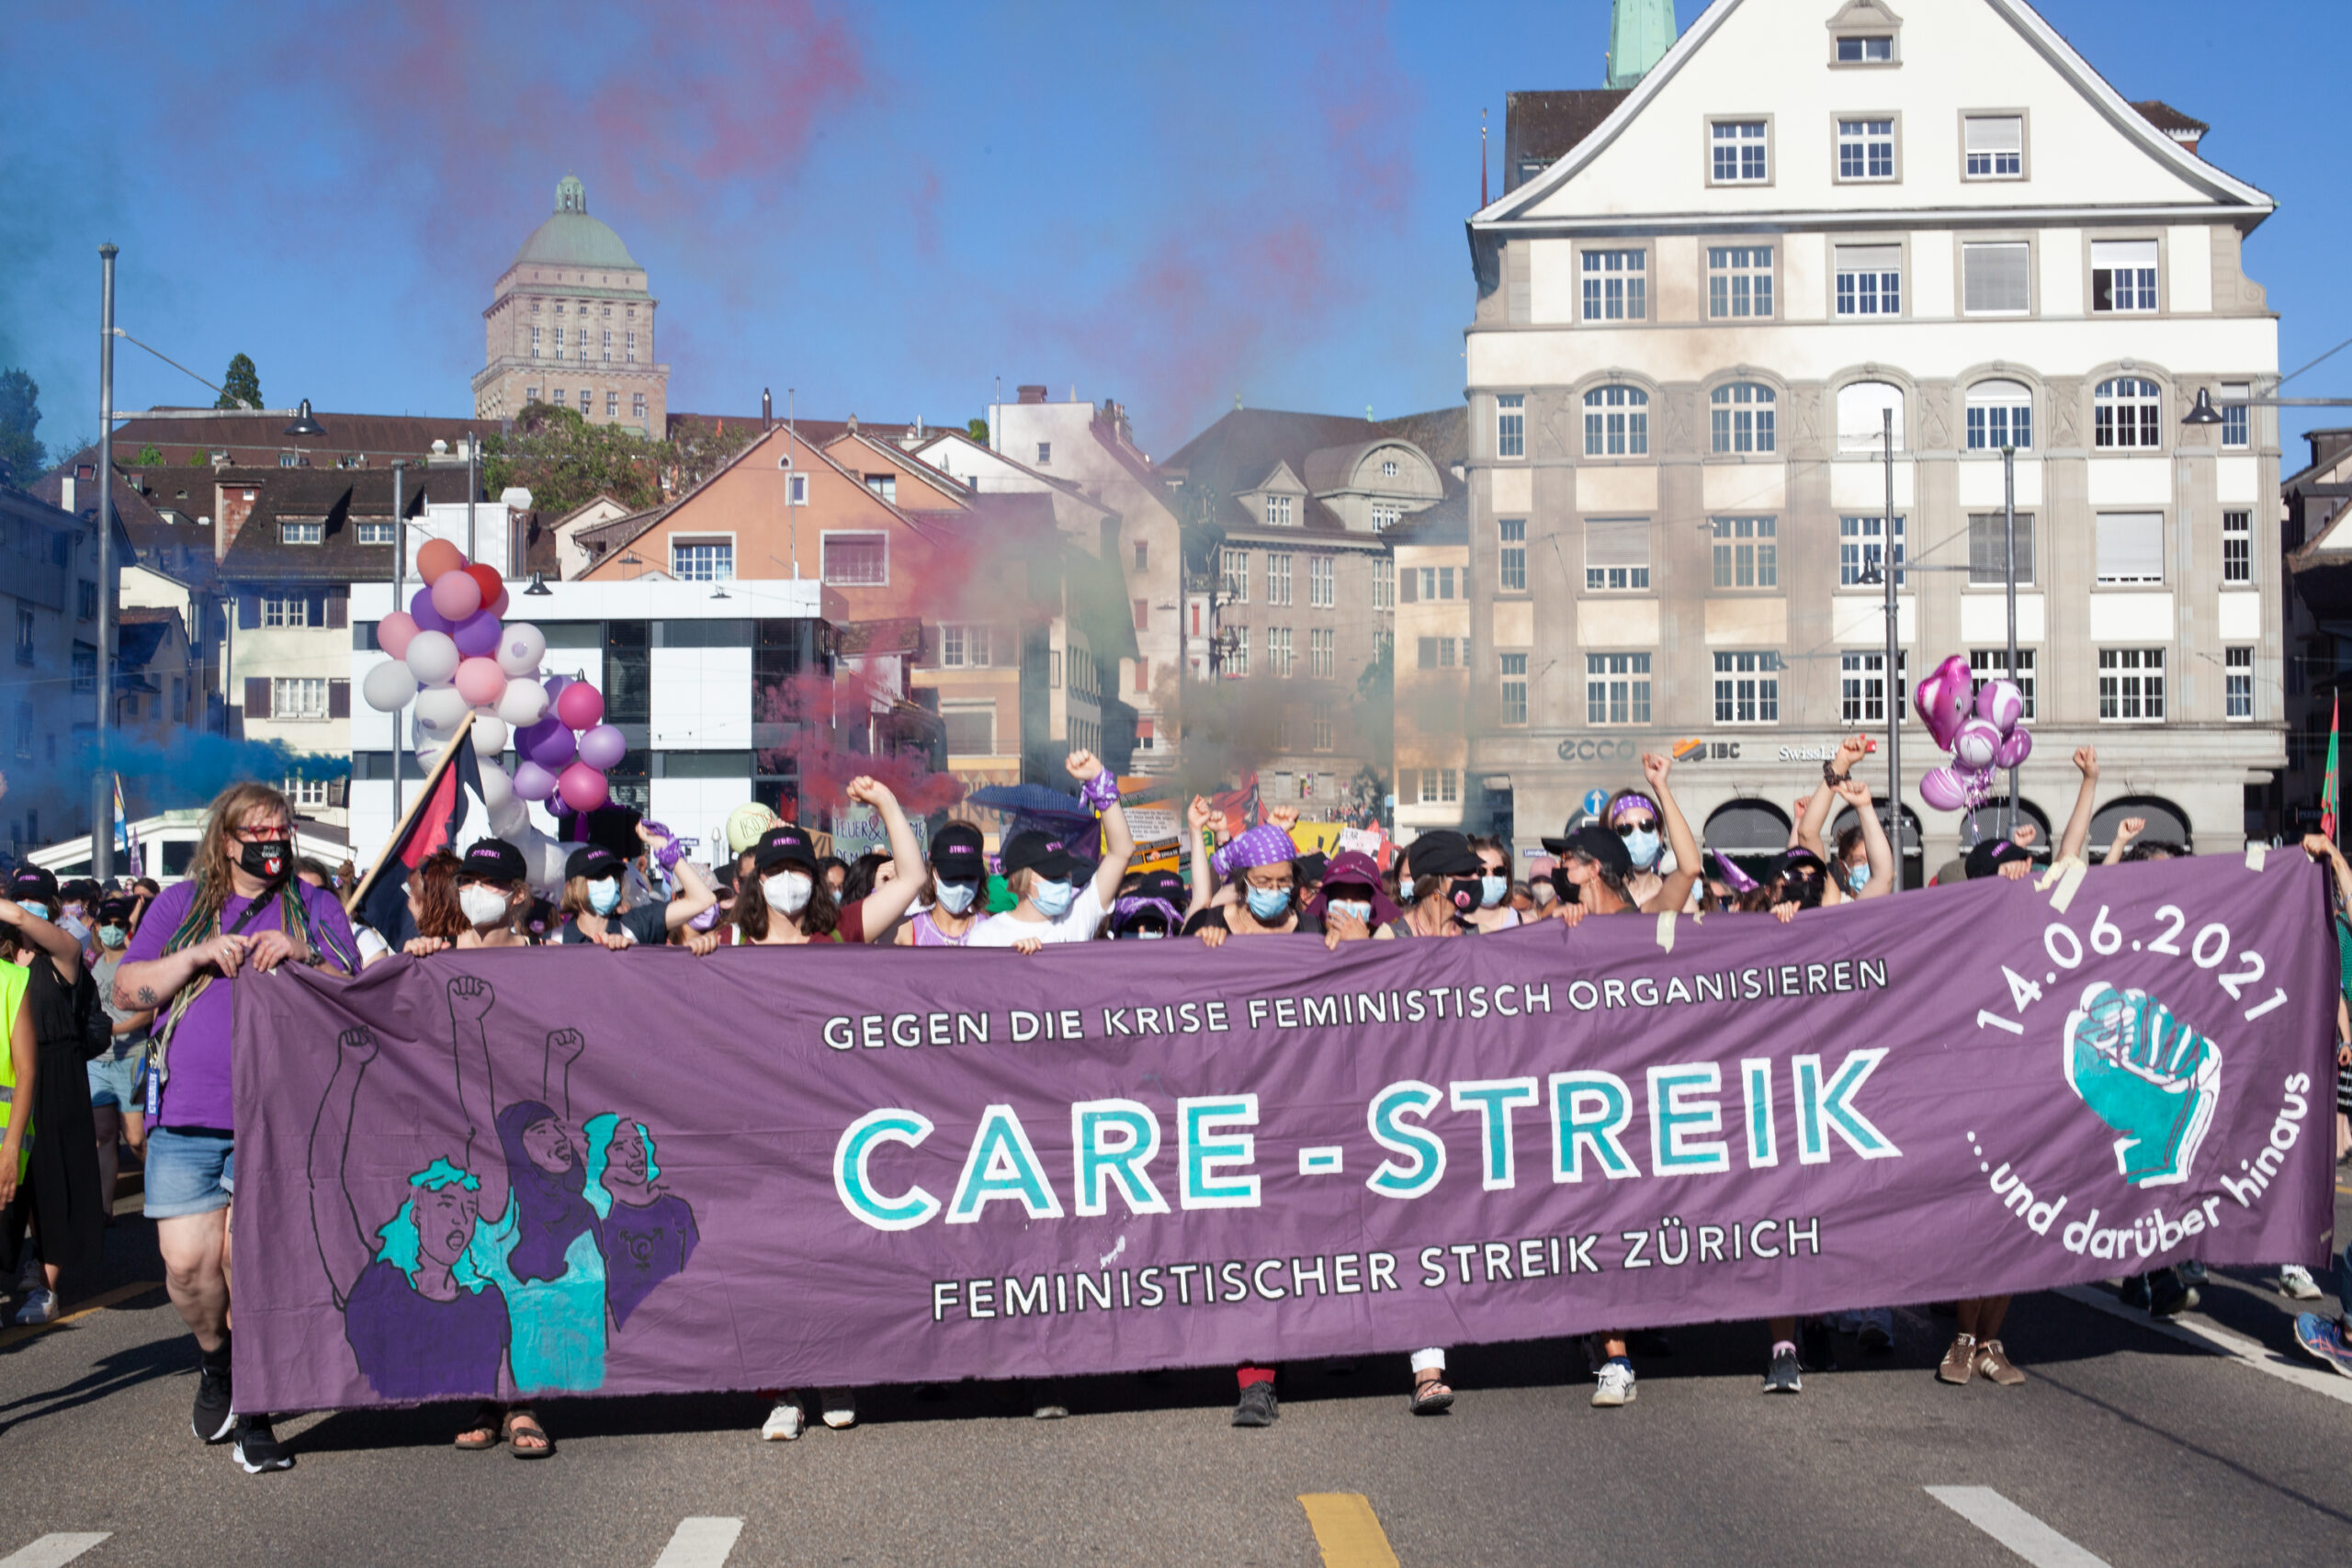 BIld der Demonstration auf der Rudolf-Brun-Brücke. Personen tragen das Frontbanner, auf dem steht: Gegen die Krise feministisch organisieren. CARE STREIK. Feministischer Streik Zürich. 14.06. 2021 ... und darüber hinaus.